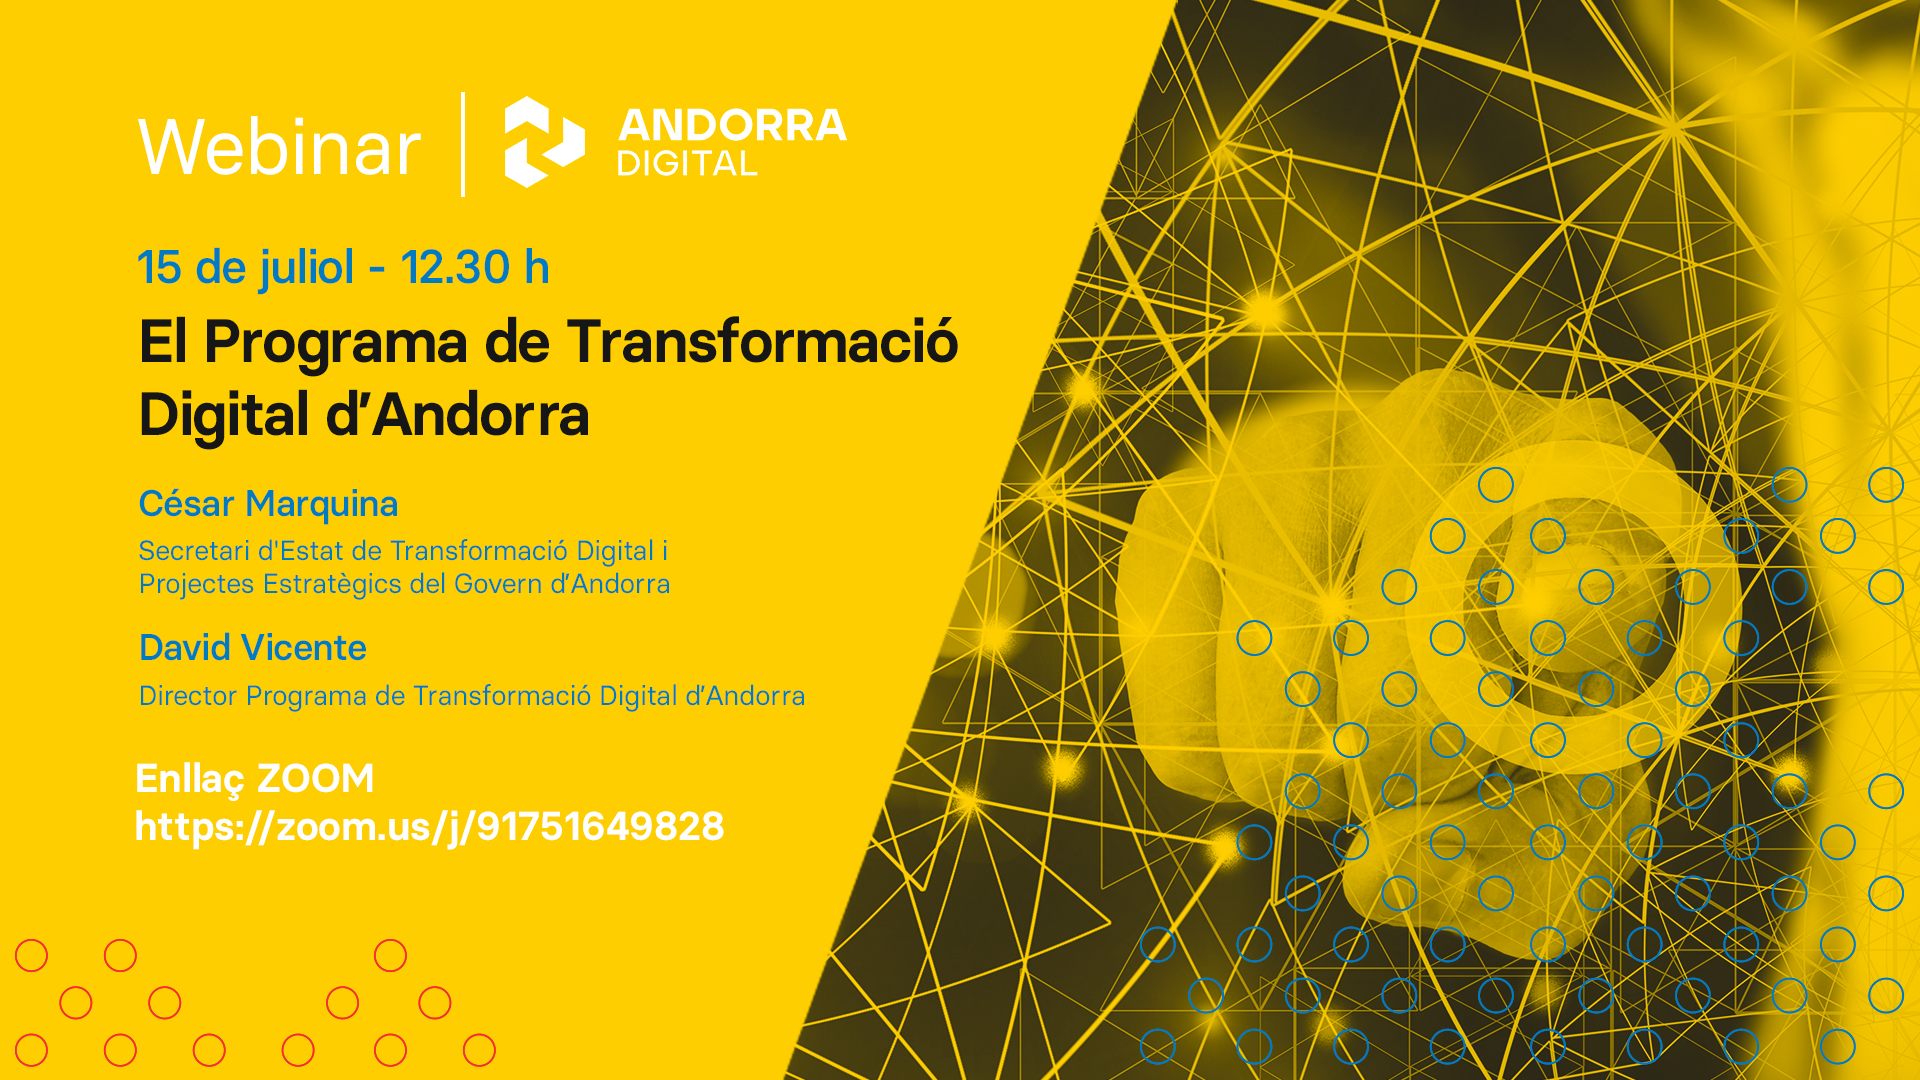 Webinar Andorra Digital - El Programa de Transformació Digital d'Andorra